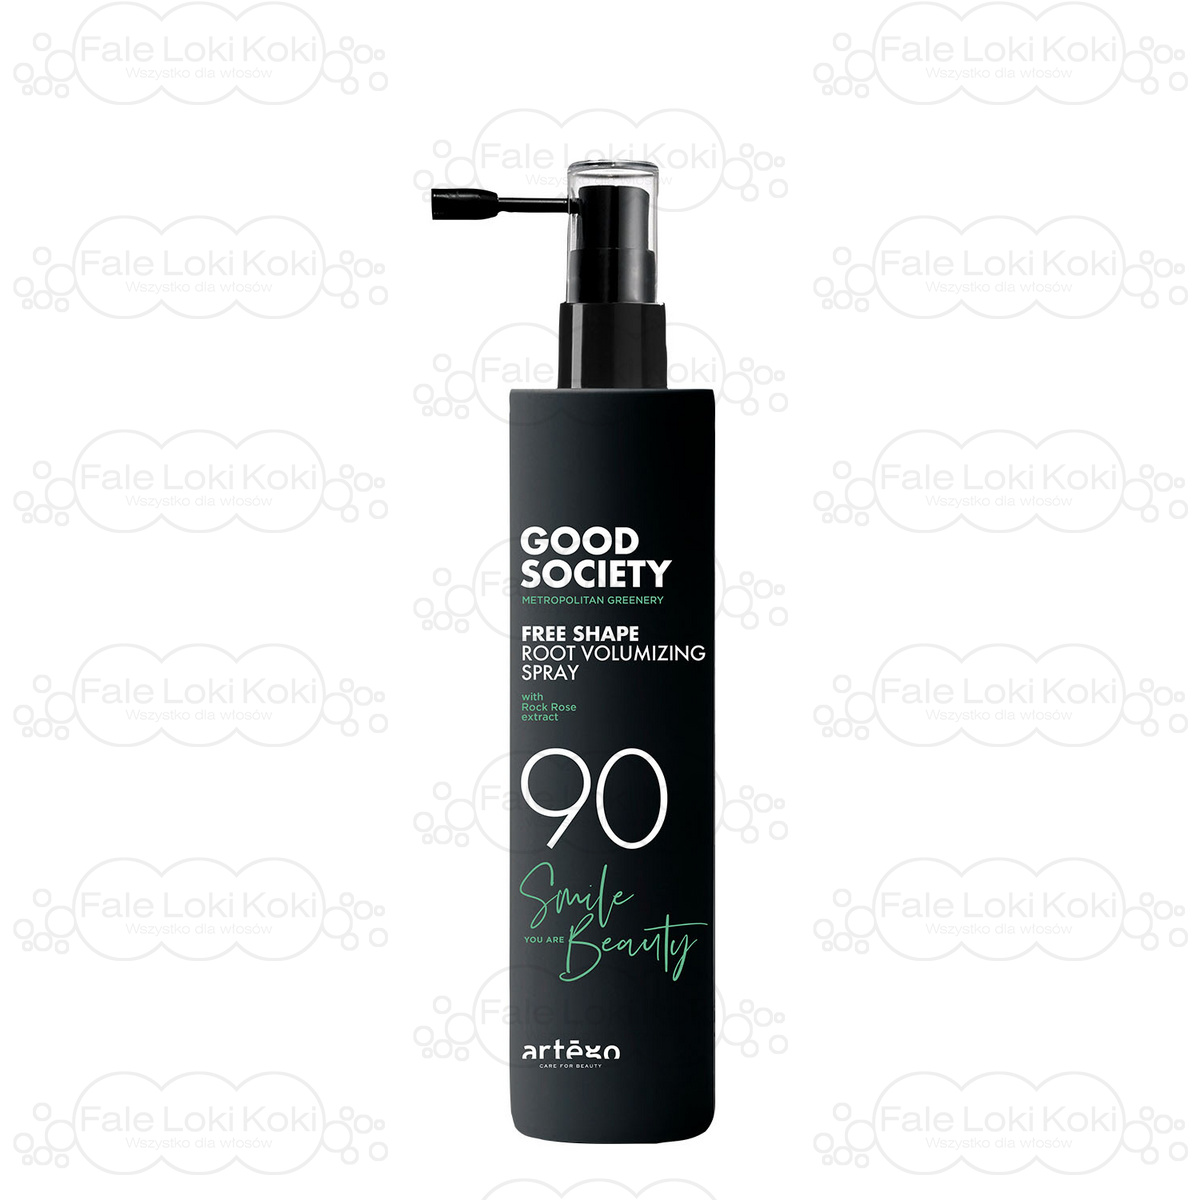 ARTEGO GOOD SOCIETY spray nadający objętość 90 FREE SHAPE ROOT VOLUMIZING SPRAY 150 ml